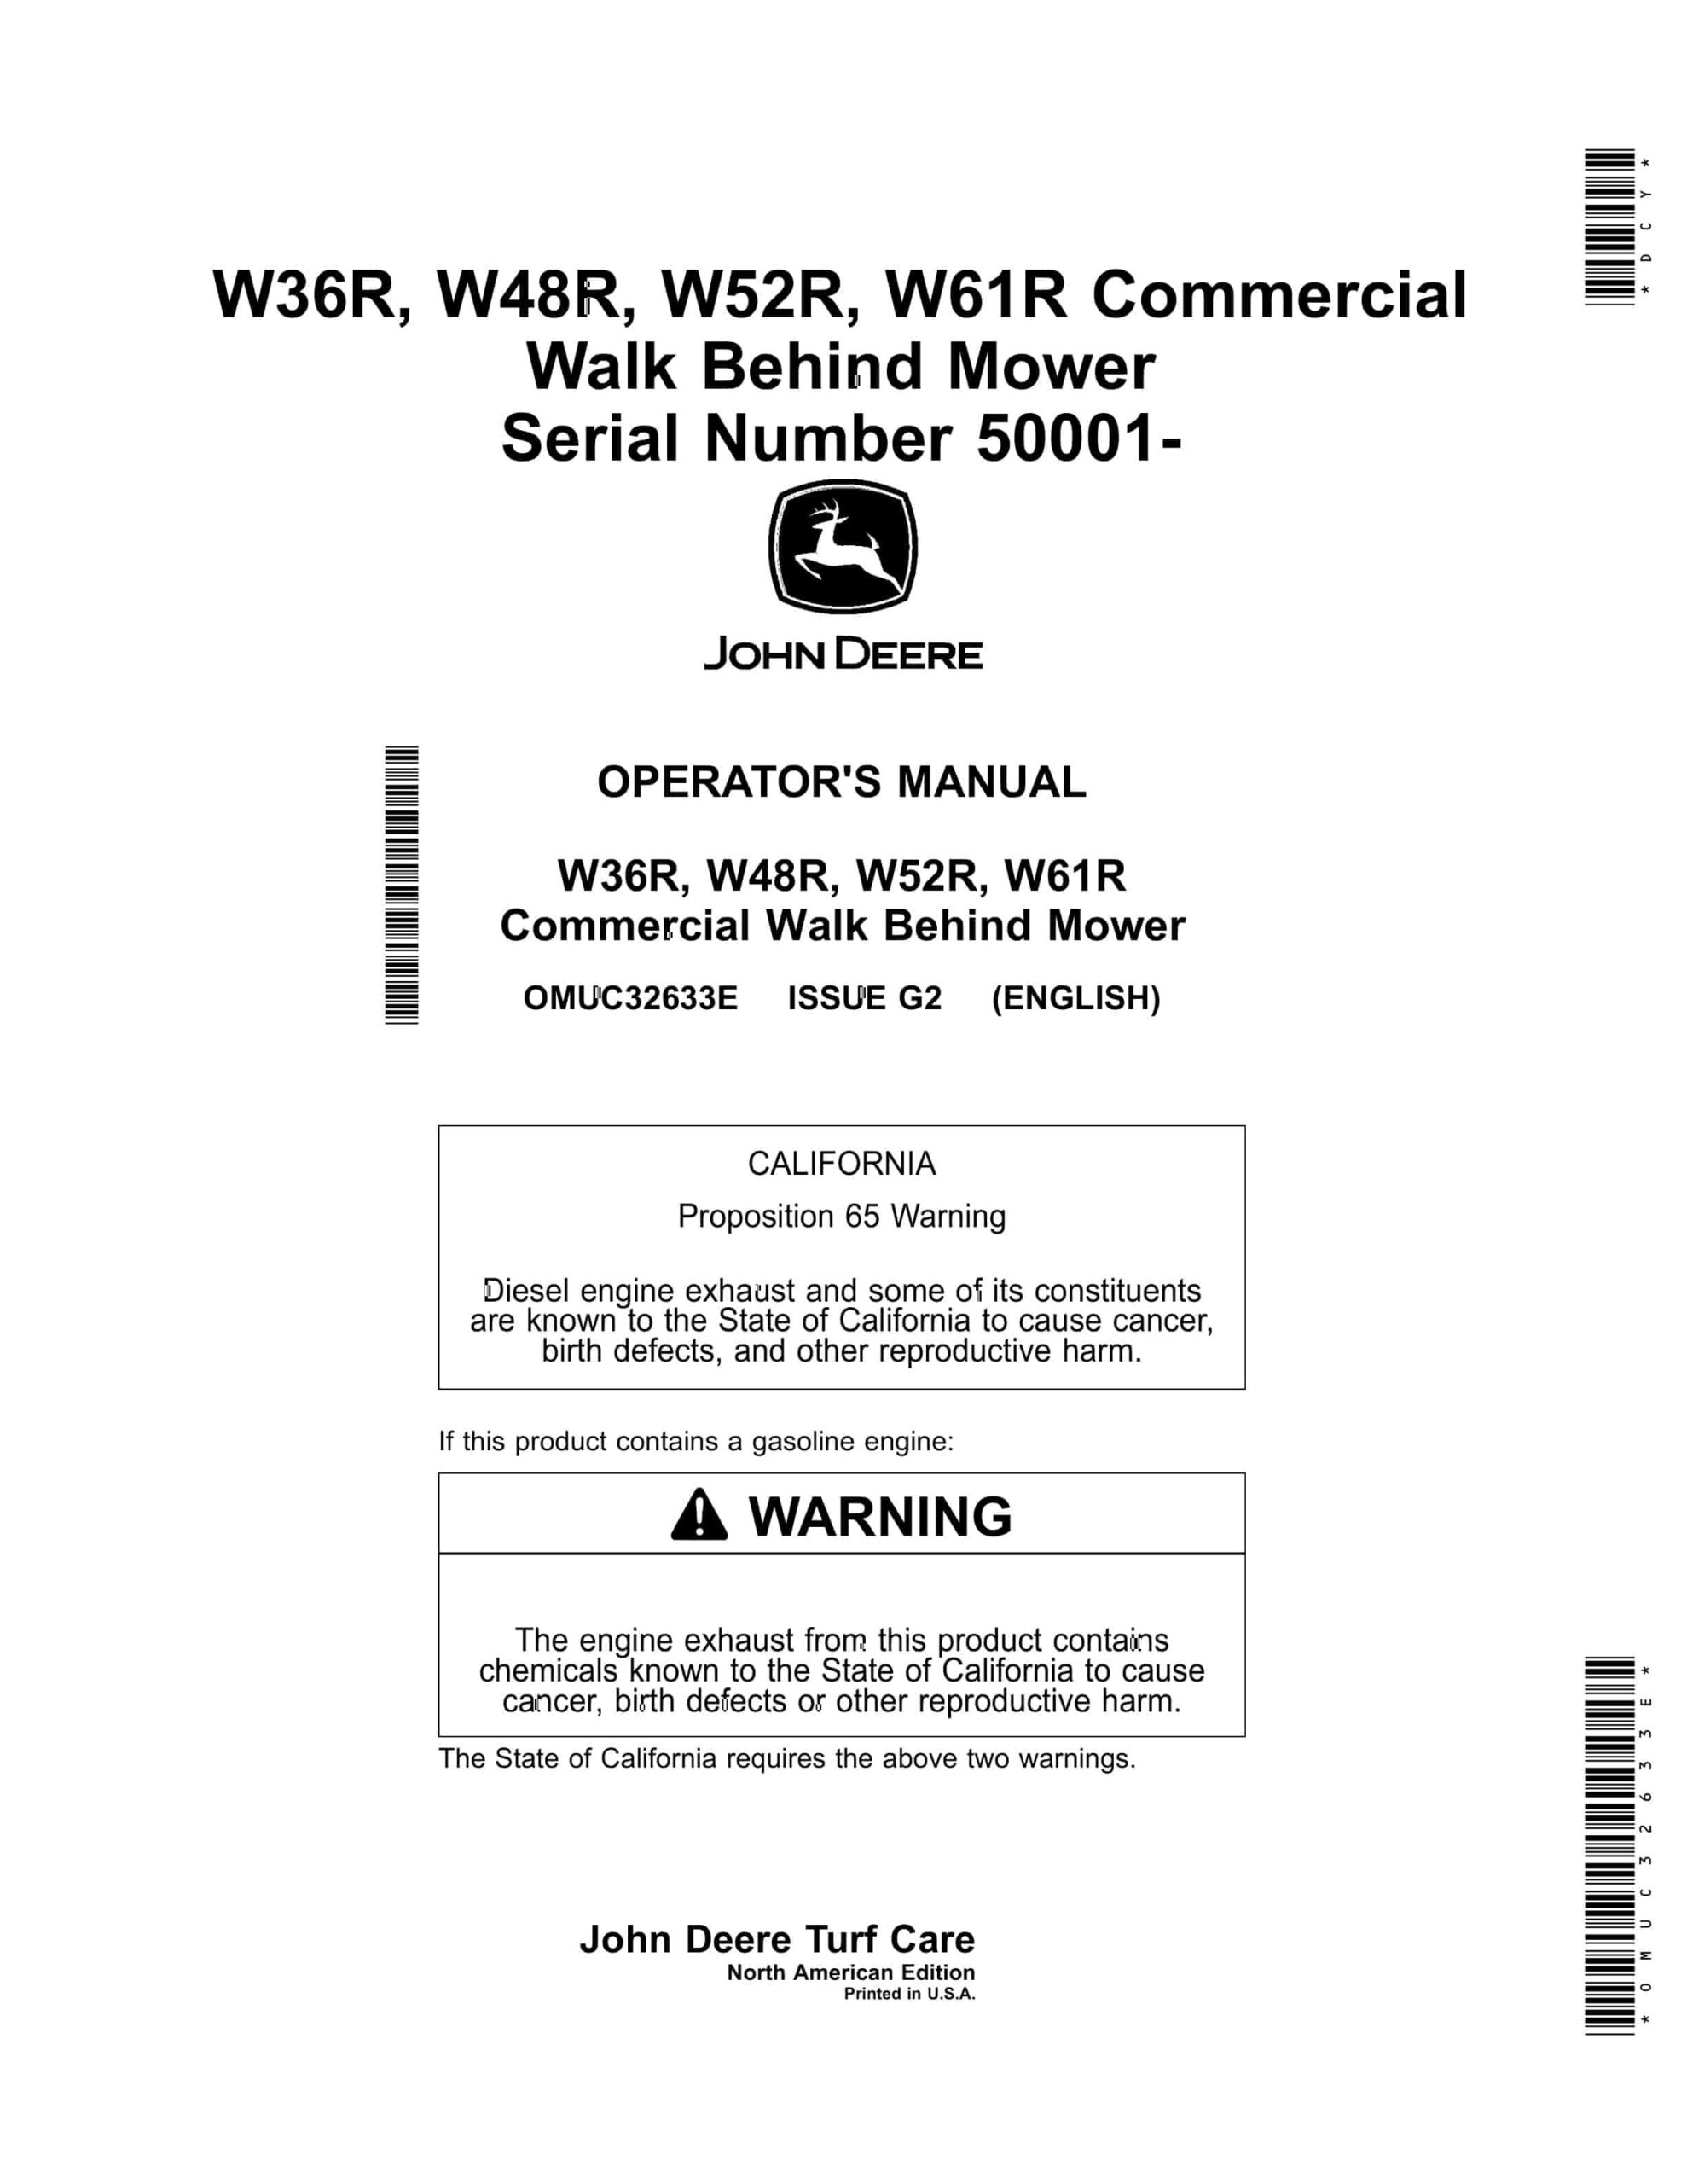 John Deere W36R, W48R, W52R, W61R Commercial Walk Behind Mower Operator Manual OMUC32633E-1